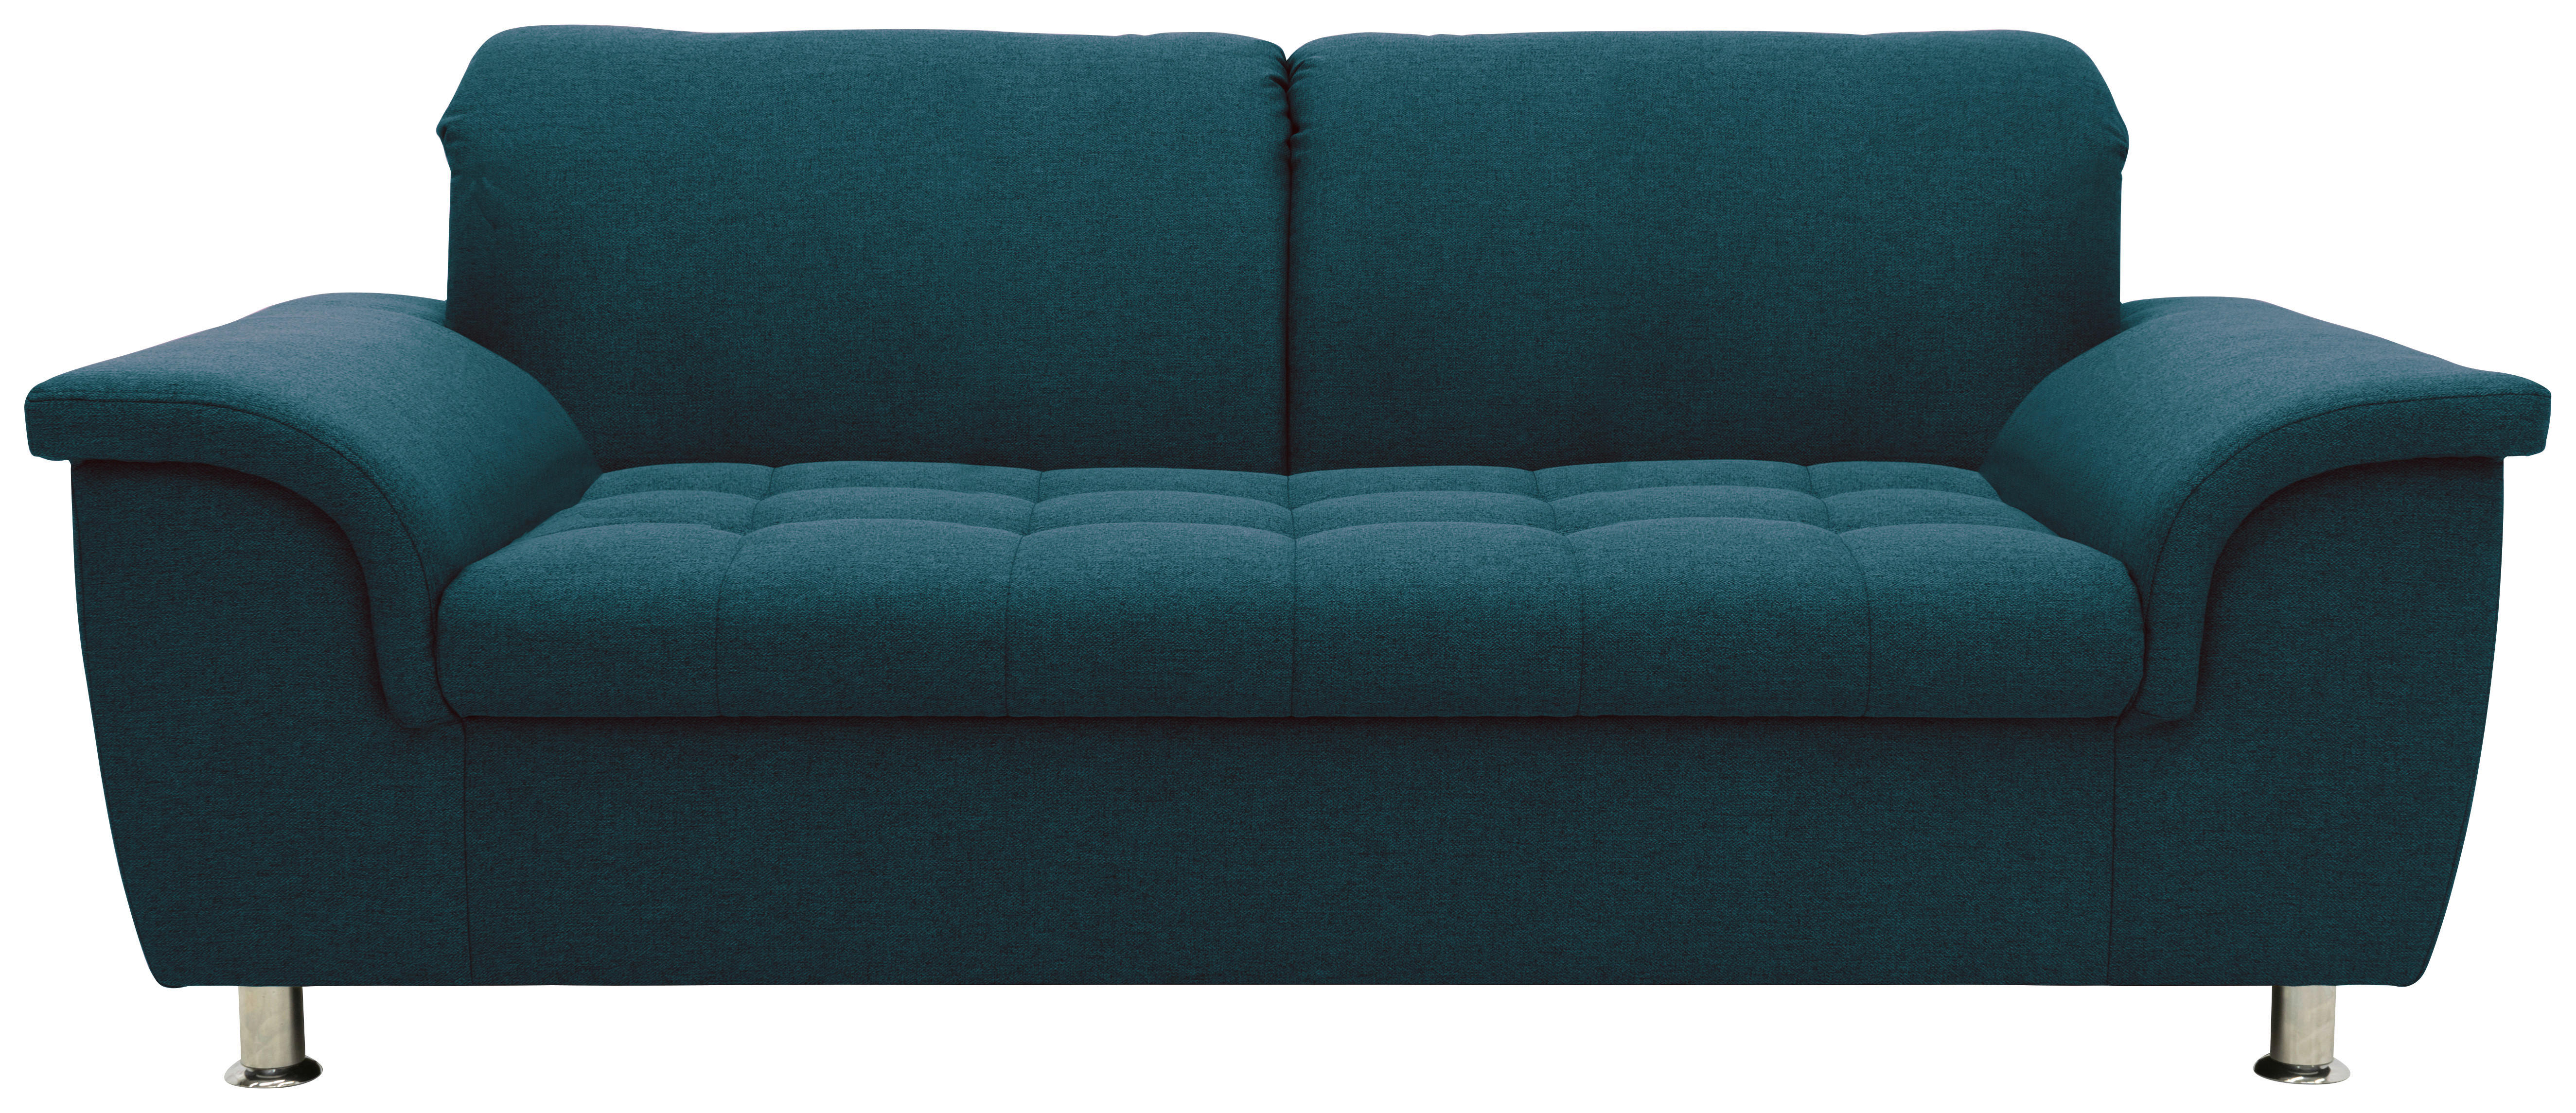 Zweisitzer-Sofa mit Funktion Webstoff Dunkelblau  - Chromfarben/Dunkelblau, KONVENTIONELL, Textil/Metall (190/81/105cm) - MID.YOU